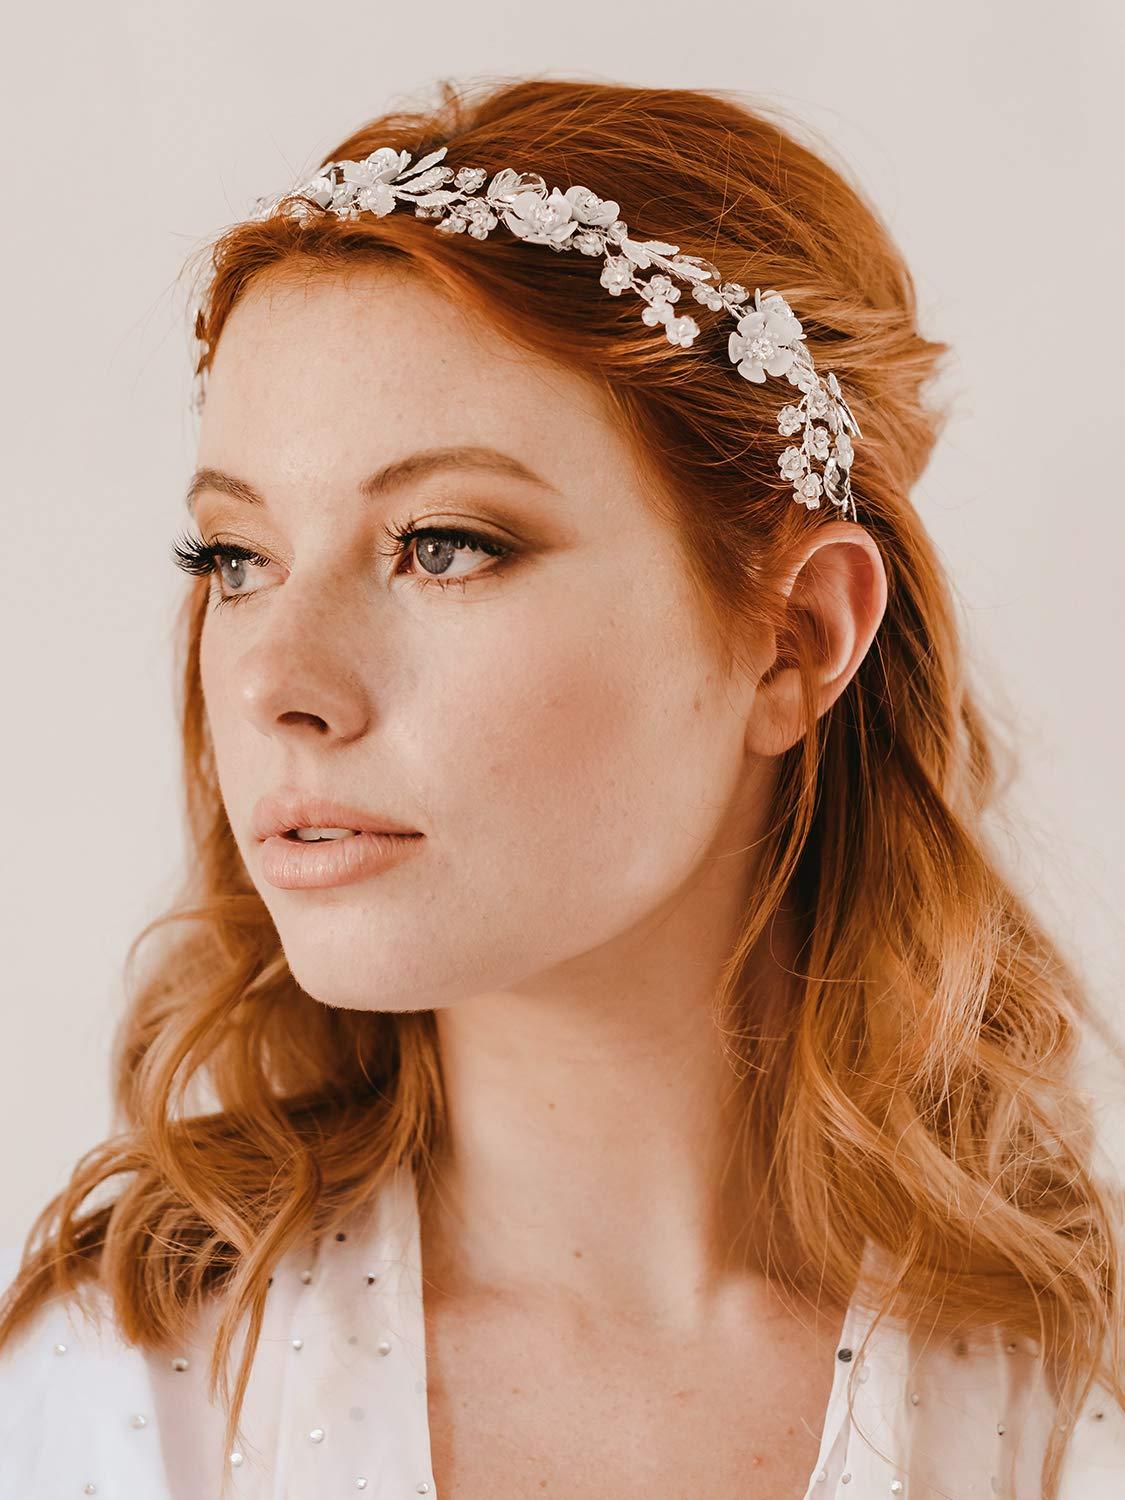 SWEETV Silver Bridal Headband Crystal Wedding Headpieces for Bride